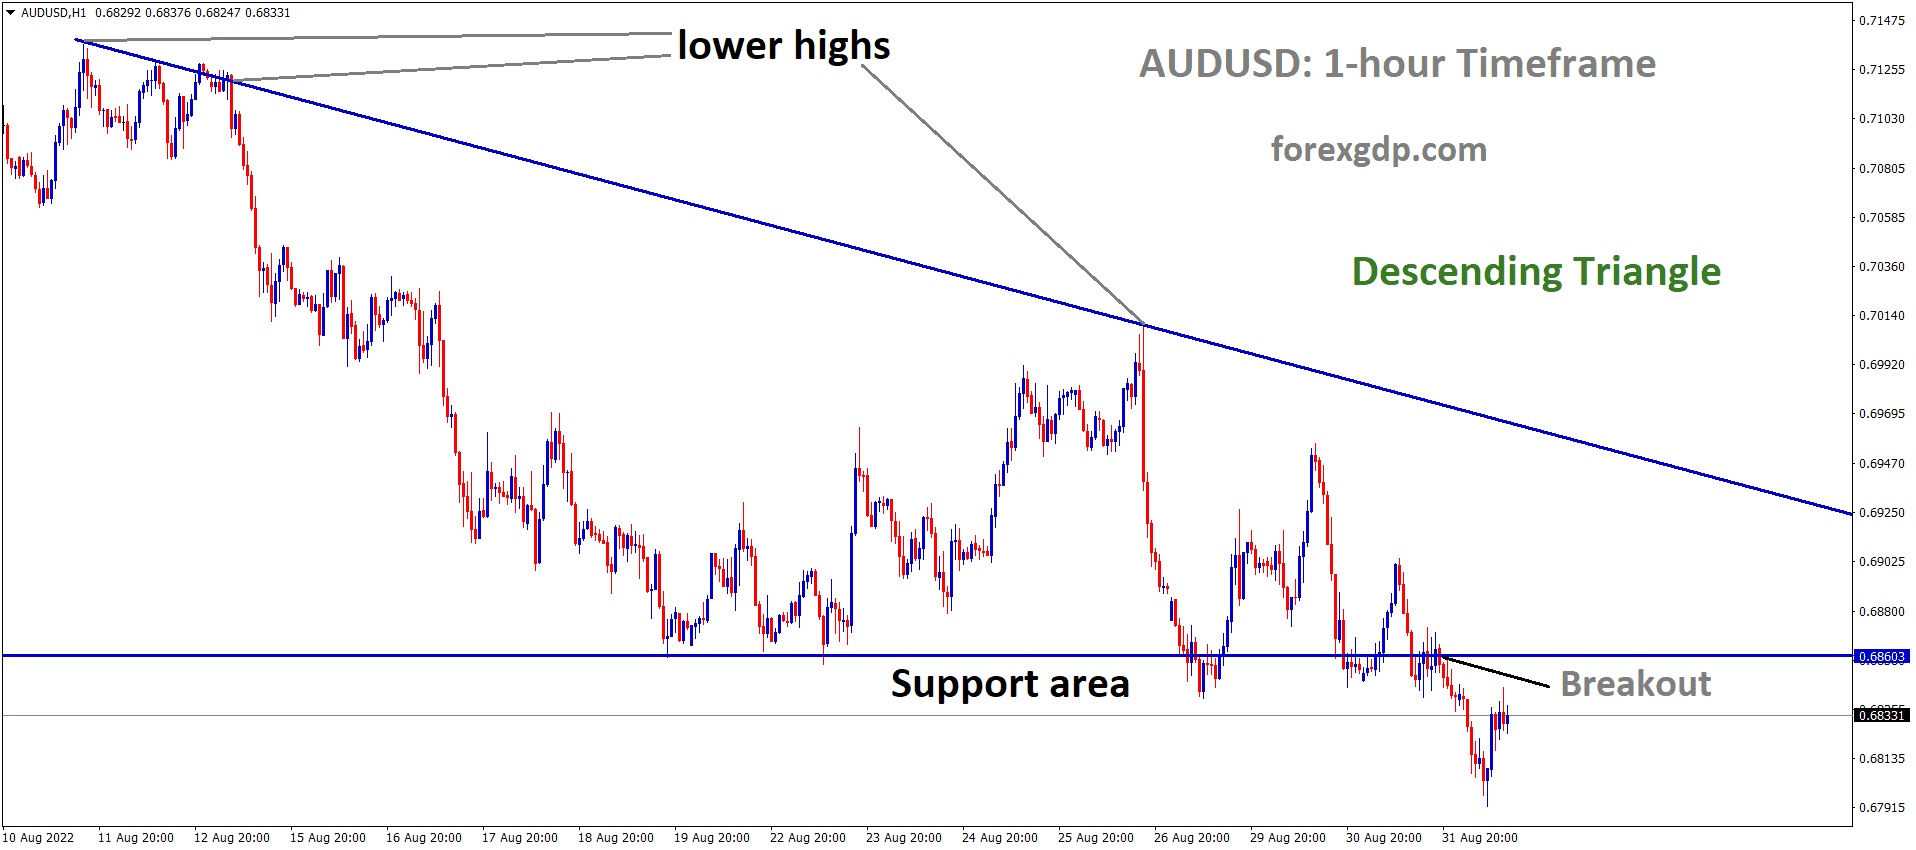 AUDUSD has broken the Descending triangle pattern in Downside.